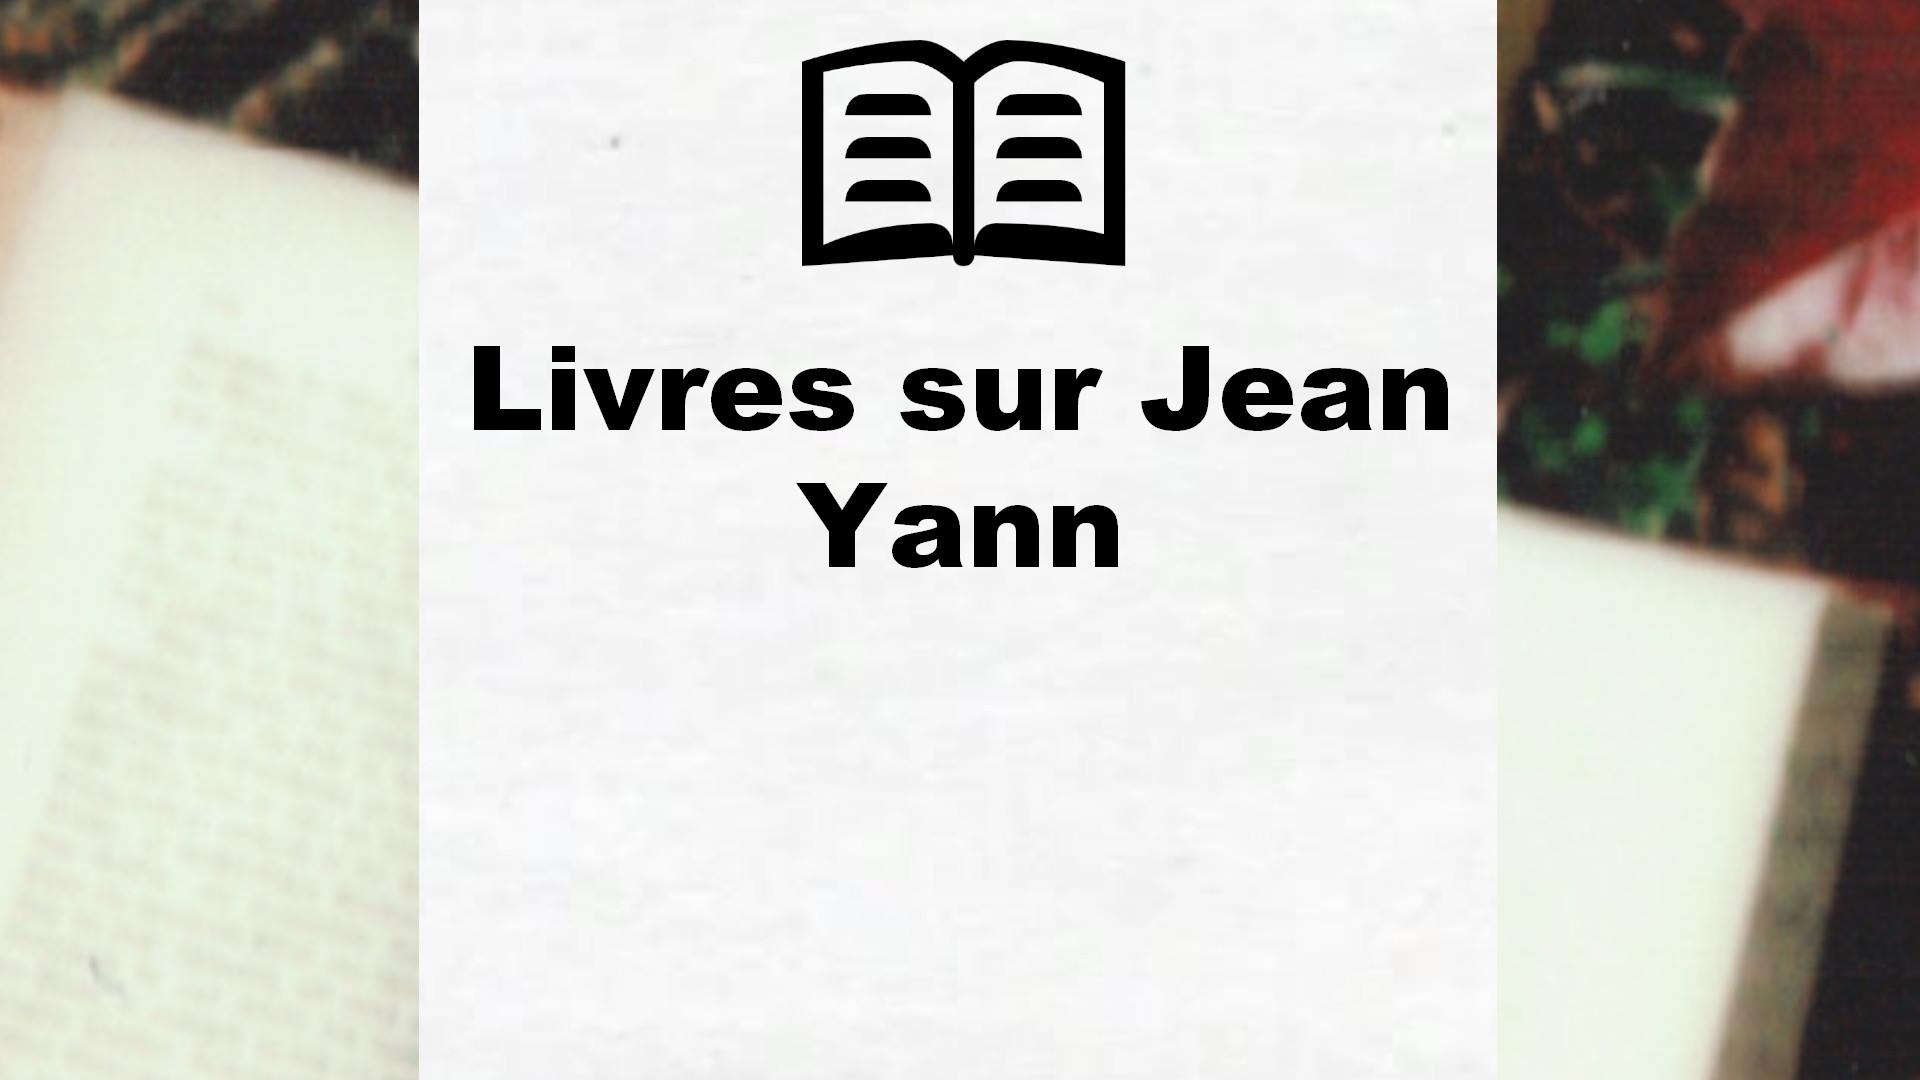 Livres sur Jean Yann